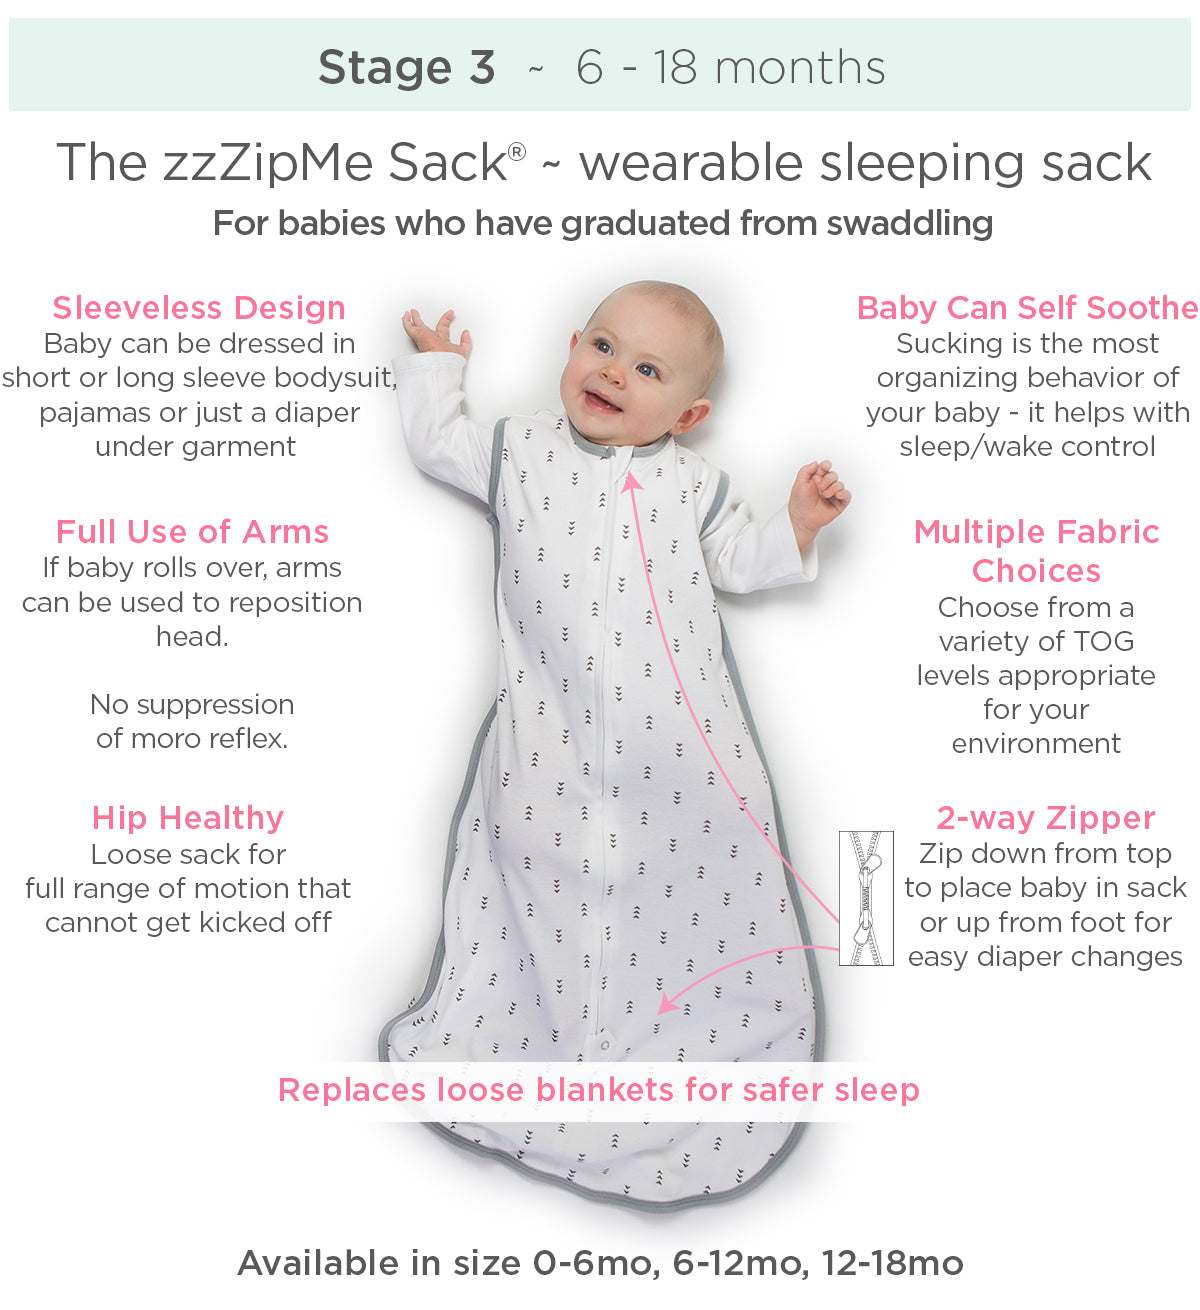 Stage 3 Safe Sleepwear zzZipMe Sack